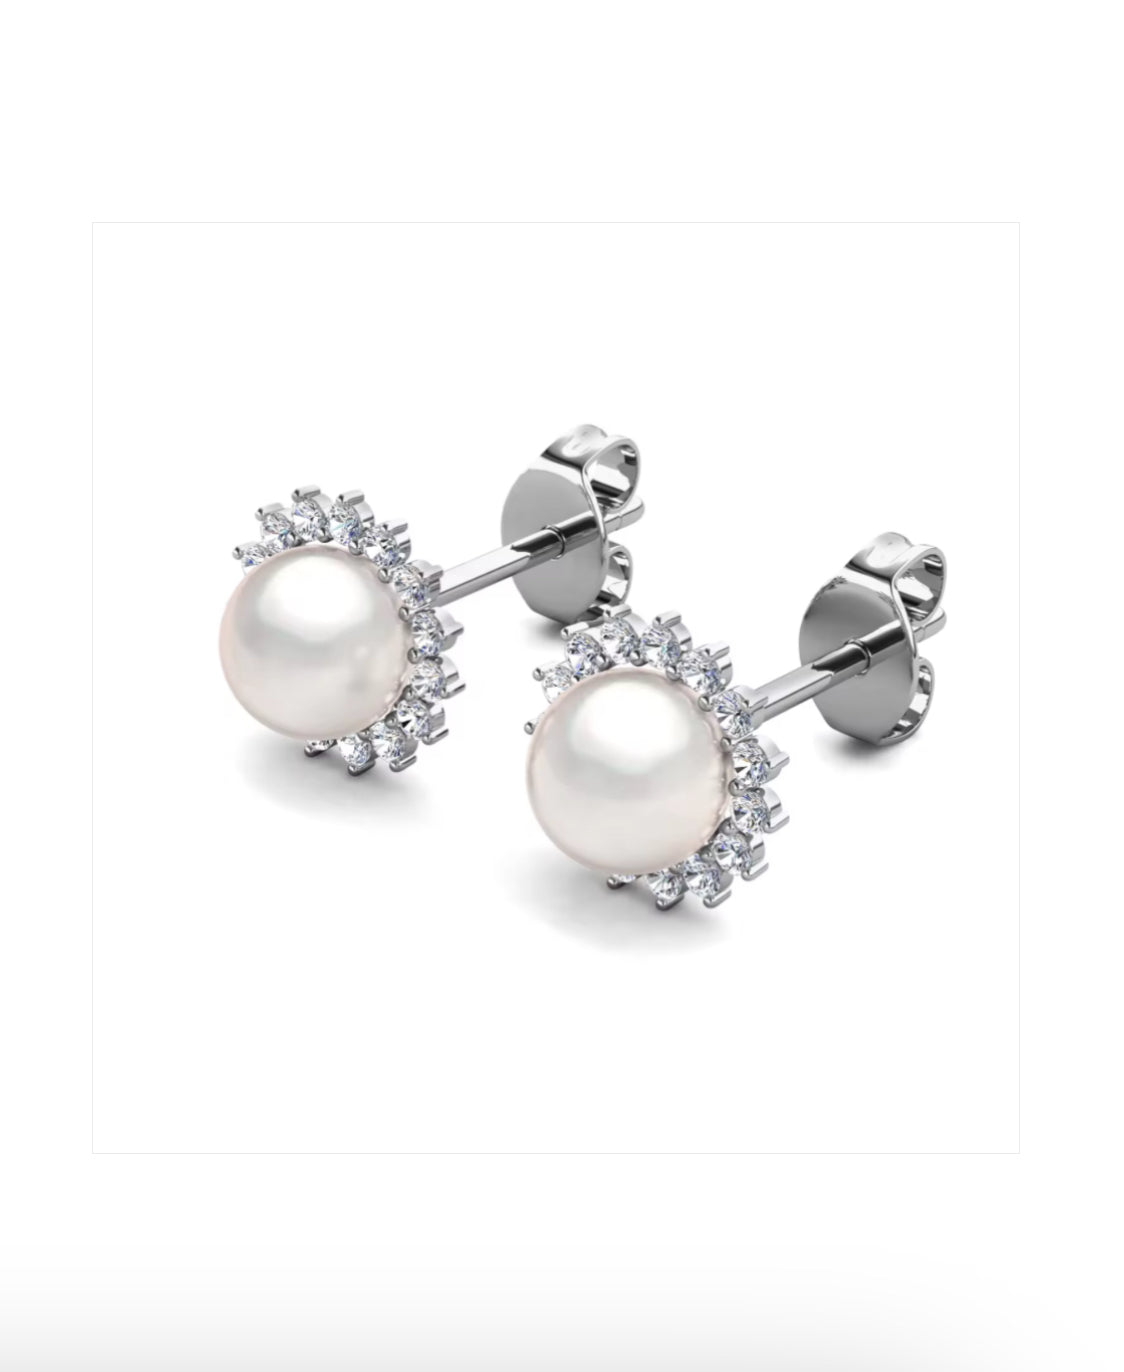 Flower motif pearl earrings